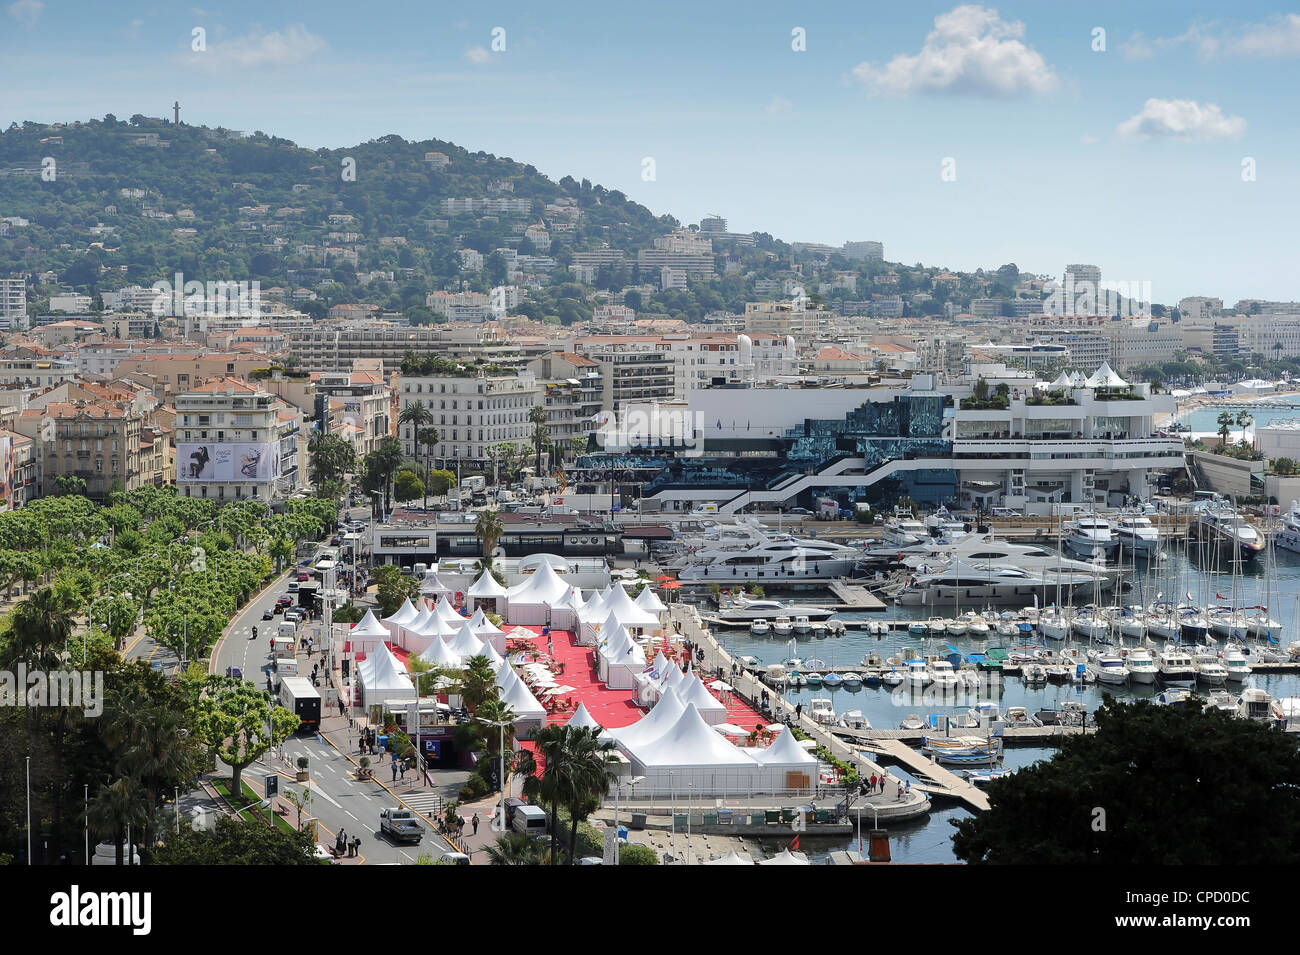 Vista generale del sessantacinquesimo international film festival di Cannes, nel sud della Francia. Foto Stock